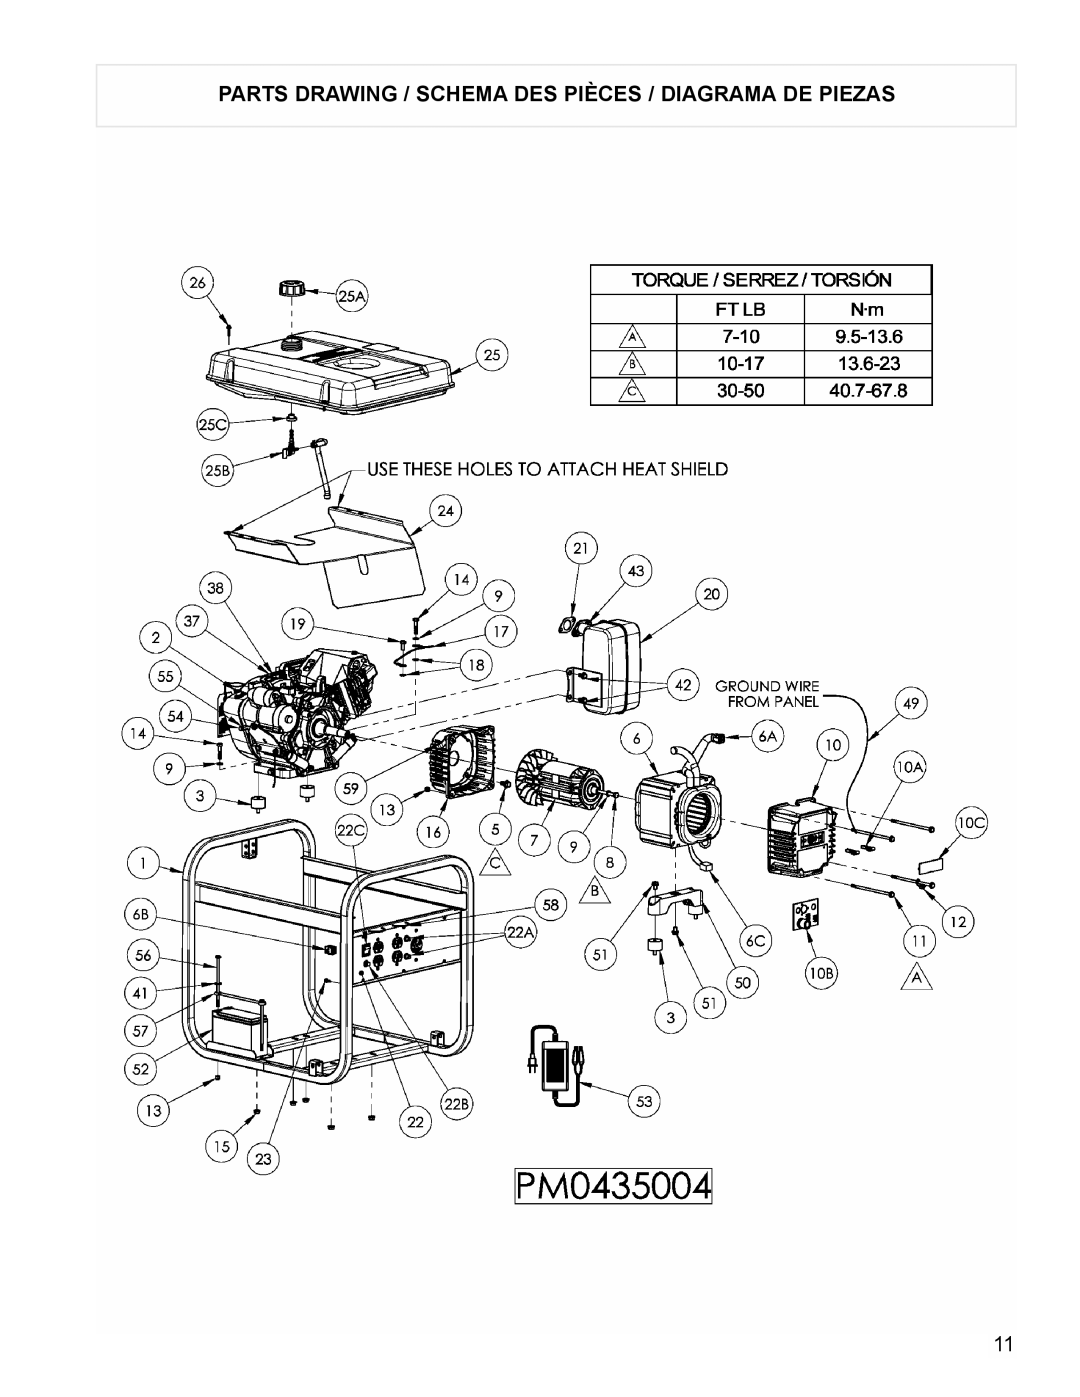 Powermate PM0435004 manual Parts Drawing / Schema Des Pièces / Diagrama De Piezas 